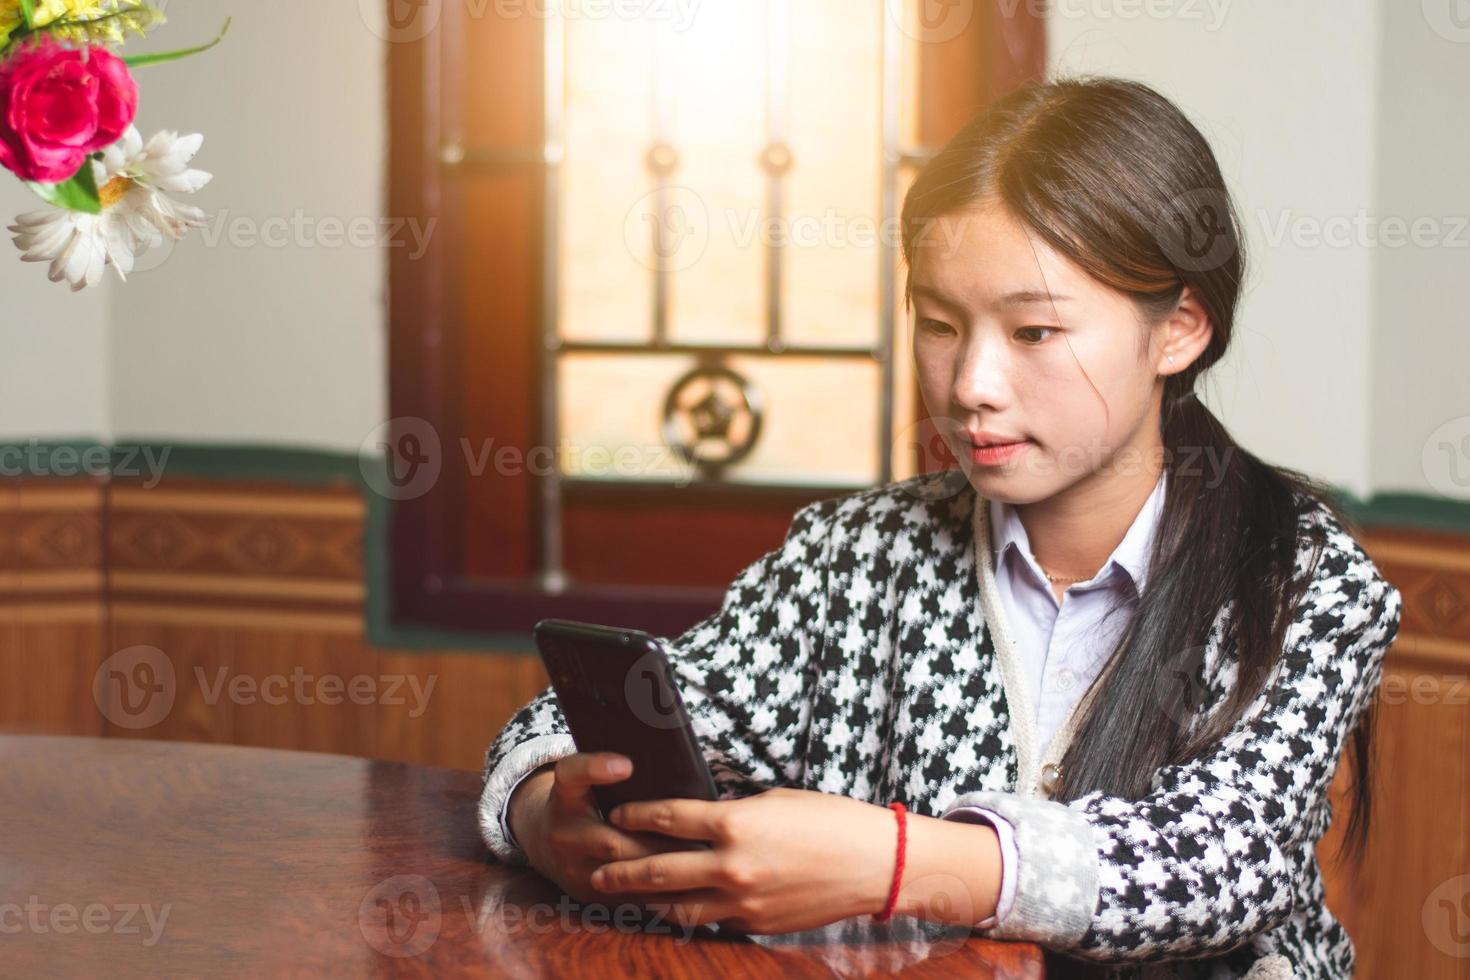 un' giovane alunno in linea Chiacchierare con sua amico su mobile Telefono, sociale media e chat connessione concetto, sole leggero attraverso il finestre copia spazio per individuale testo foto